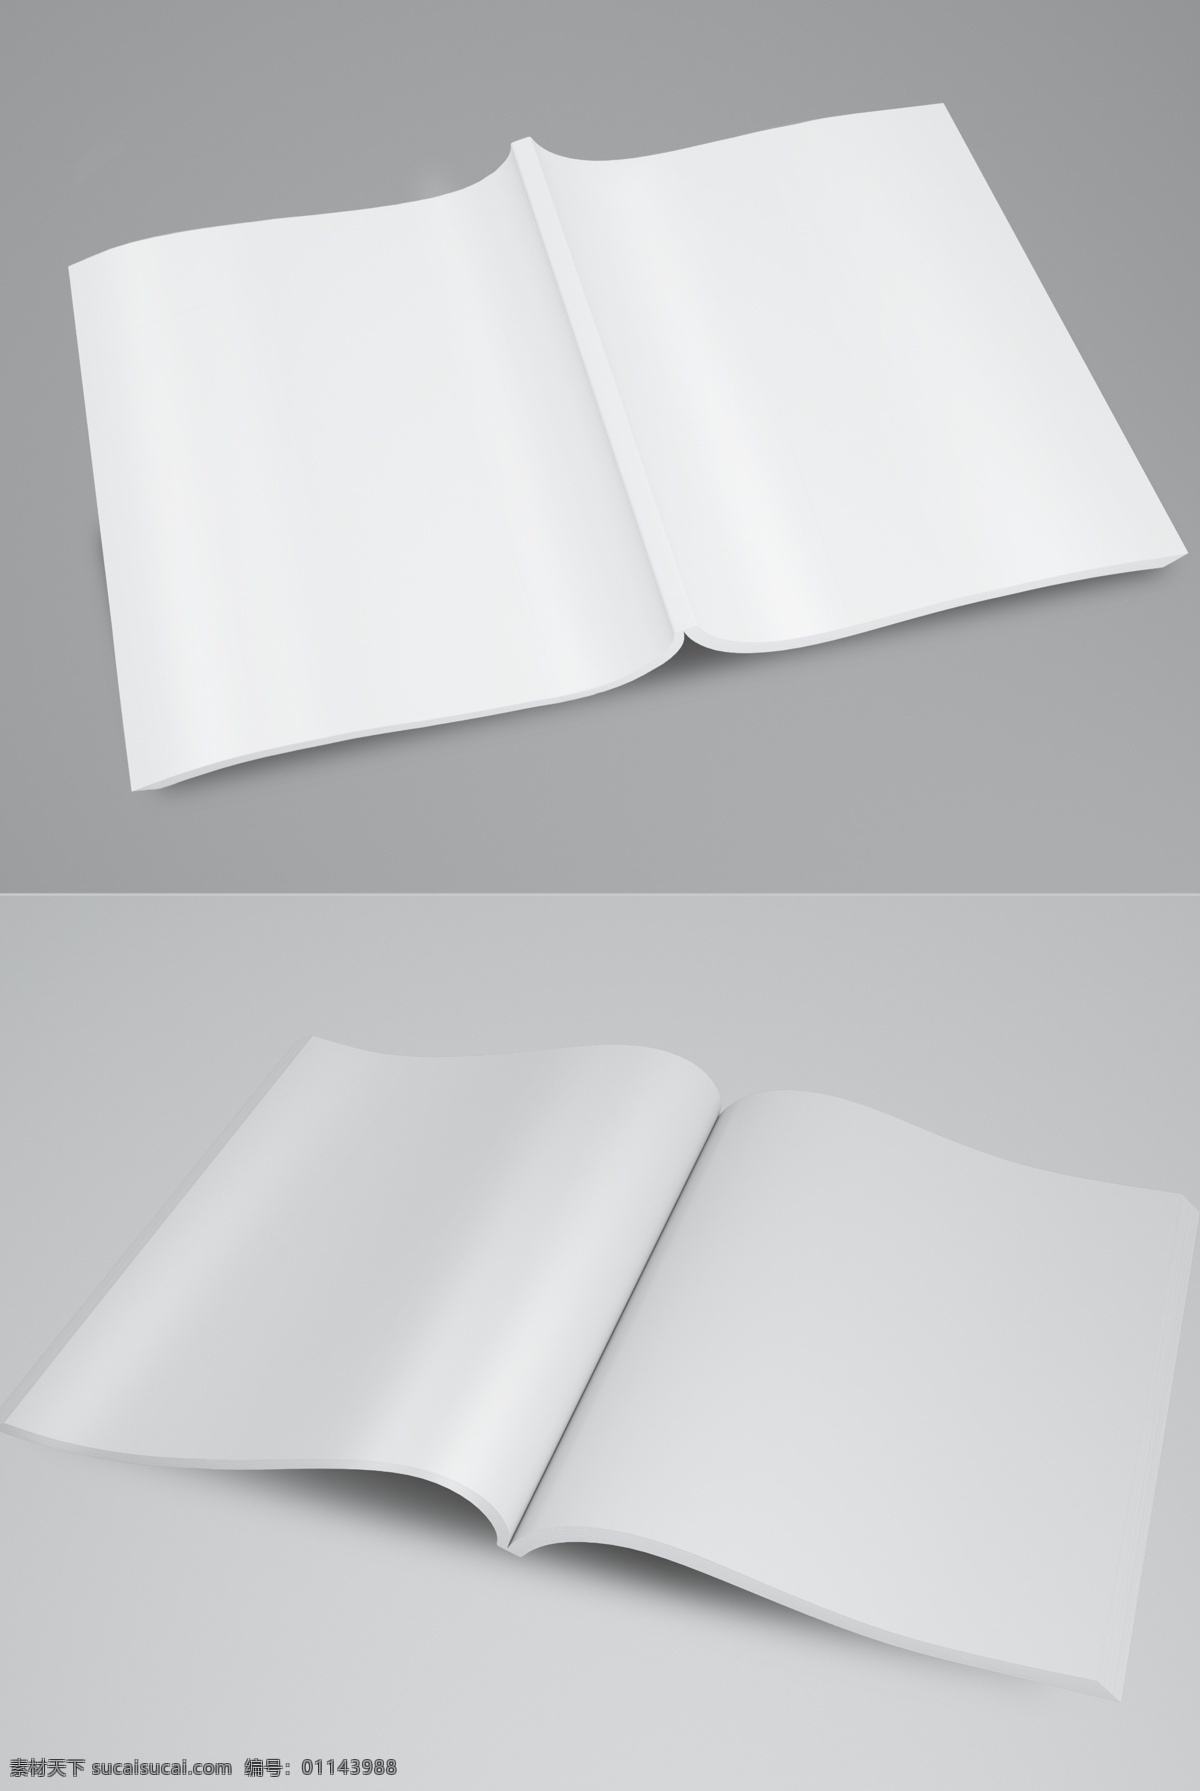 画册 书本 杂志 样机 画册设计